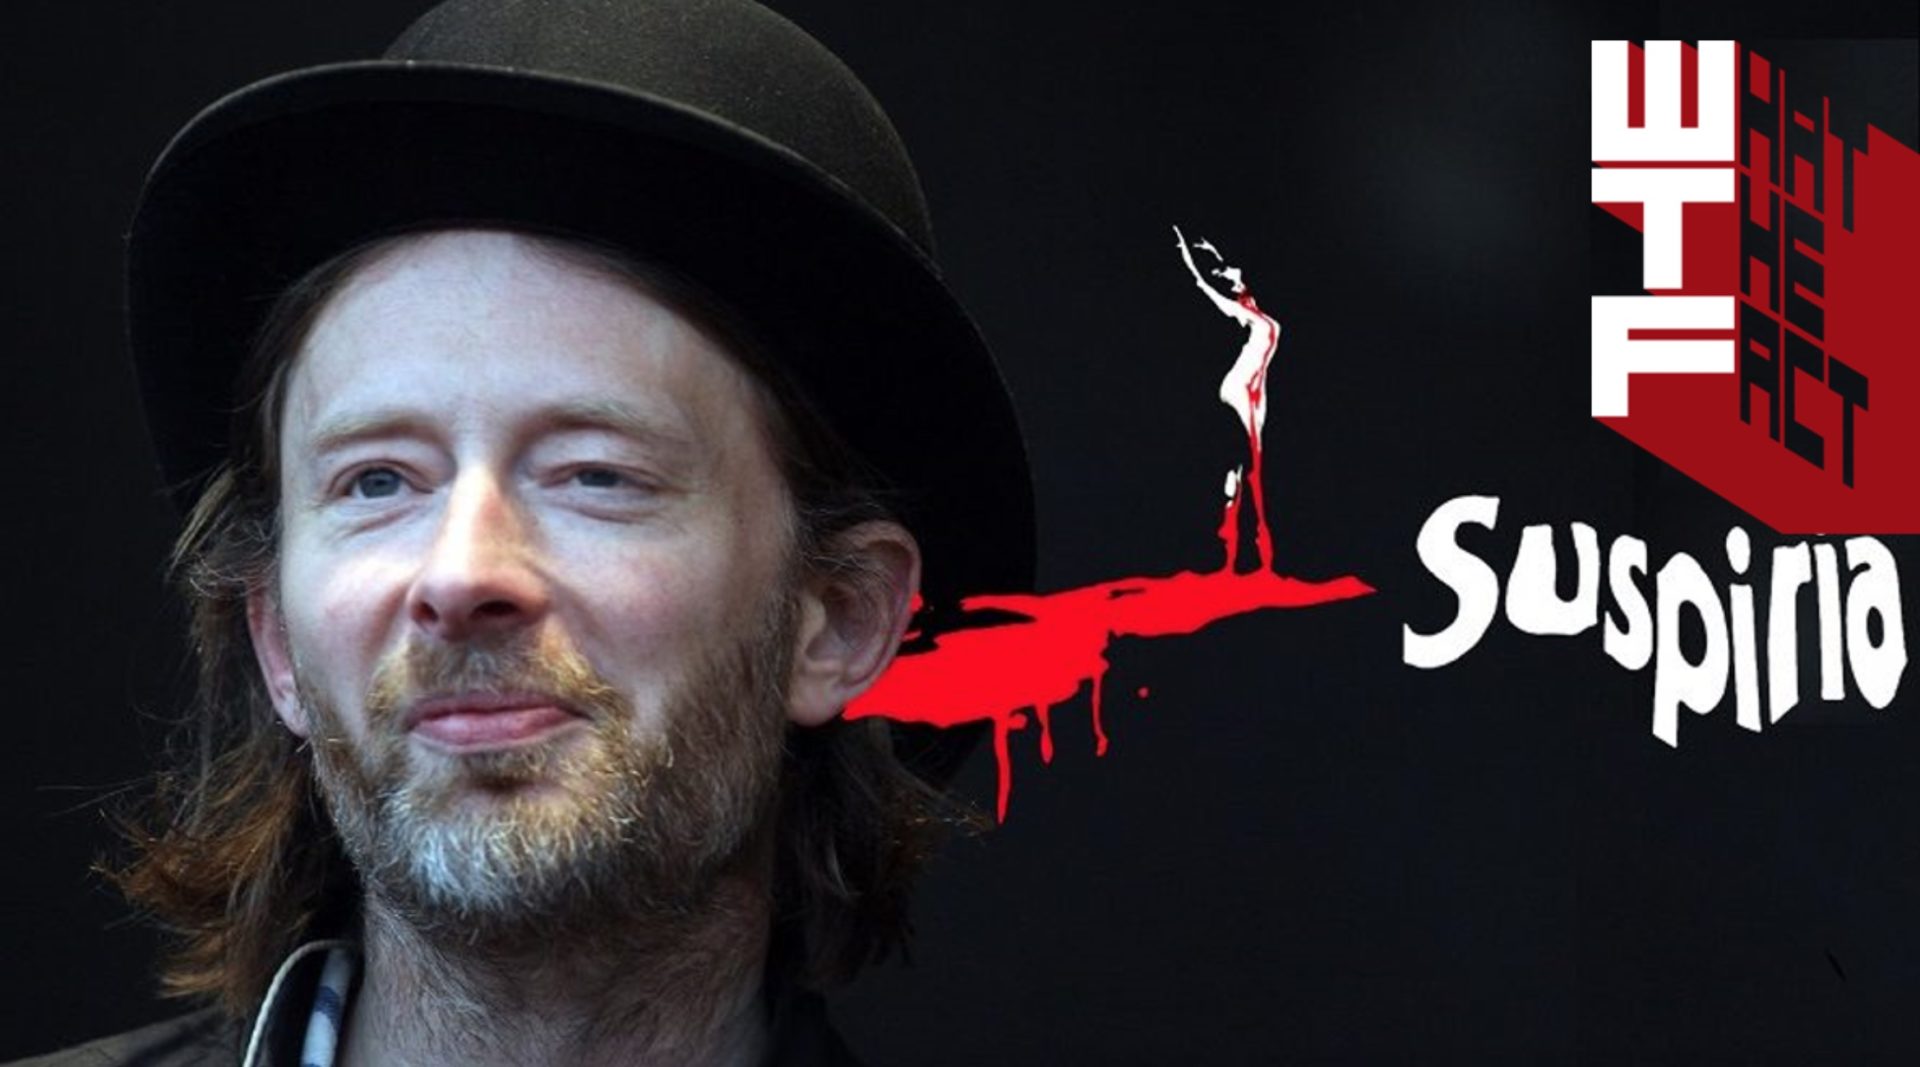 ชมตัวอย่างเวอร์ชั่นรีเมคของหนังสยองขวัญอิตาลีสุดคลาสสิค “Suspiria” และการทำเพลงประกอบสุดหลอนโดย ทอม ยอร์คแห่ง Radiohead